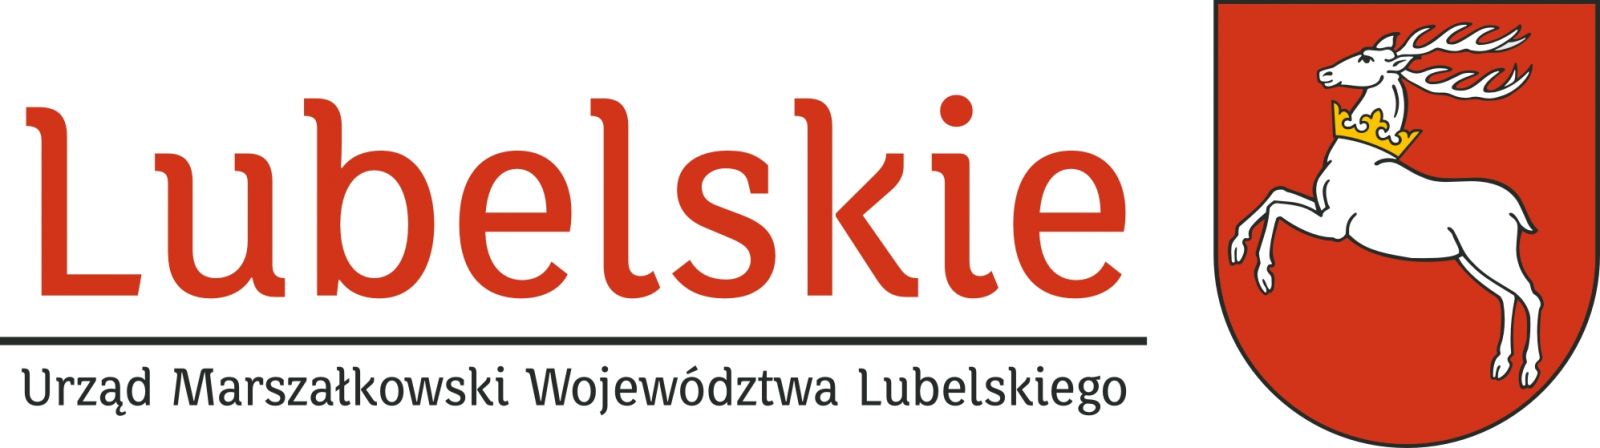 Strona internetowa Urzędu Marszałkowskiego Województwa Lubelskiego w Lublinie.  Strona zostanie otwarta w nowym oknie. - kliknięcie spowoduje otwarcie nowego okna